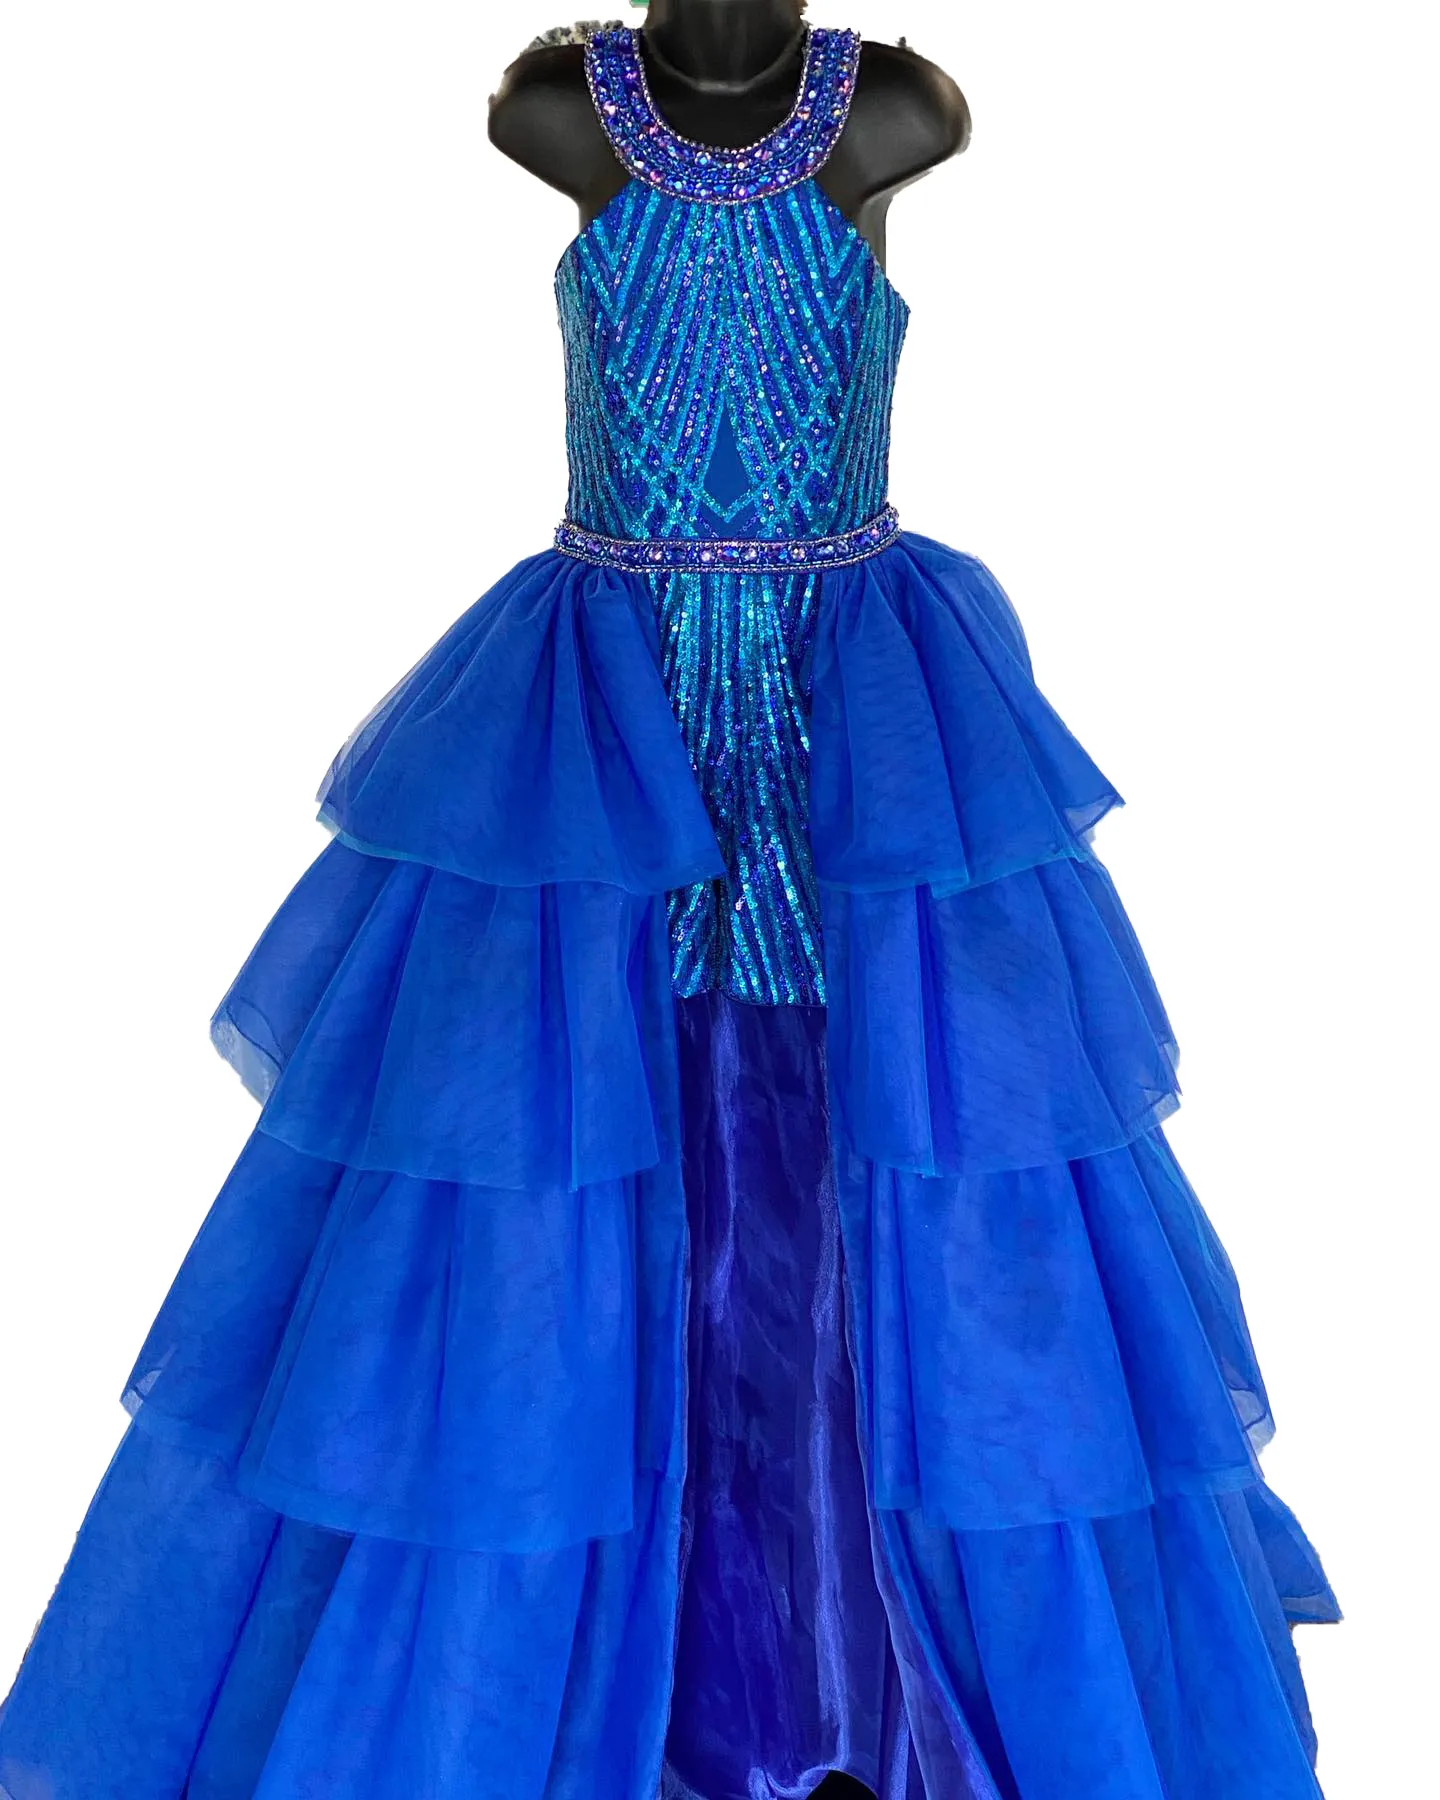 Конкурсное платье Royal-Blue для девочек, комбинезон 2023, верхняя юбка с оборками, кристаллы, блестки, детский комбинезон, Маленькая Мисс День Рождения, официальная вечеринка, коктейльное платье для подростков, подиум, Fun-Fashion 12